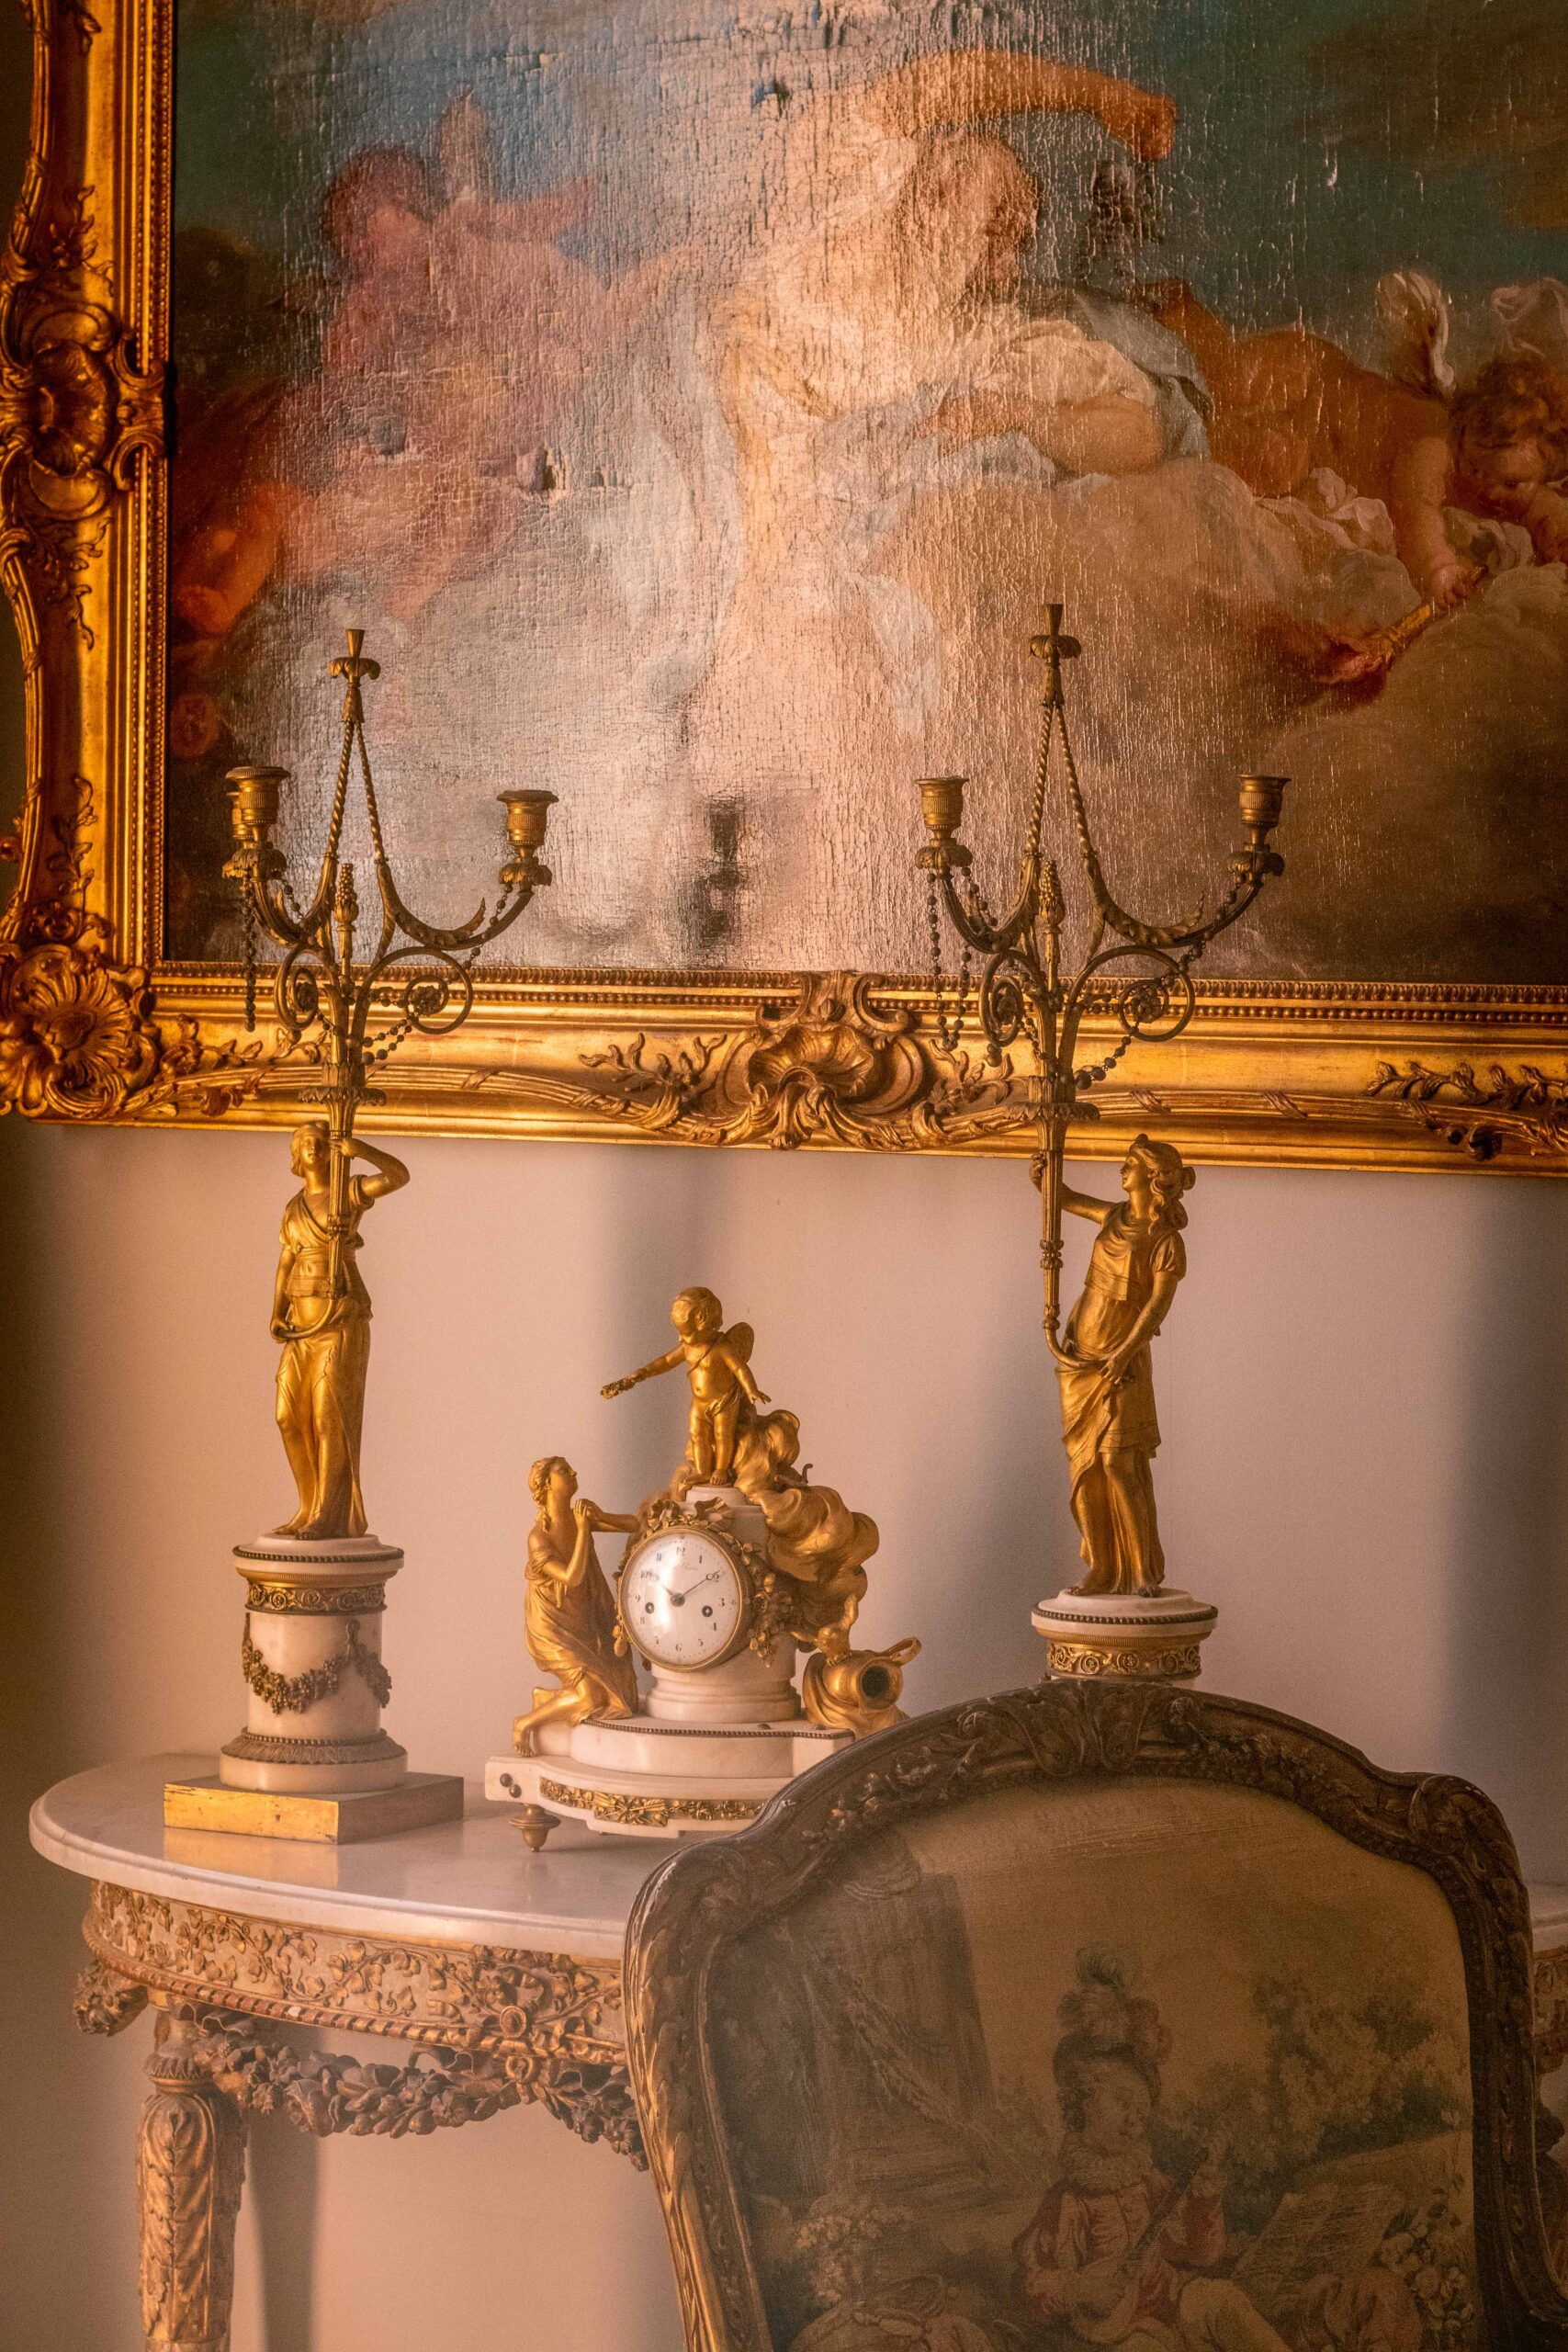 Details (clock, golden figurines, painting, chair) indoor the Villa Ephrussi de Rothschild in Saint-Jean-Cap-Ferrat, France